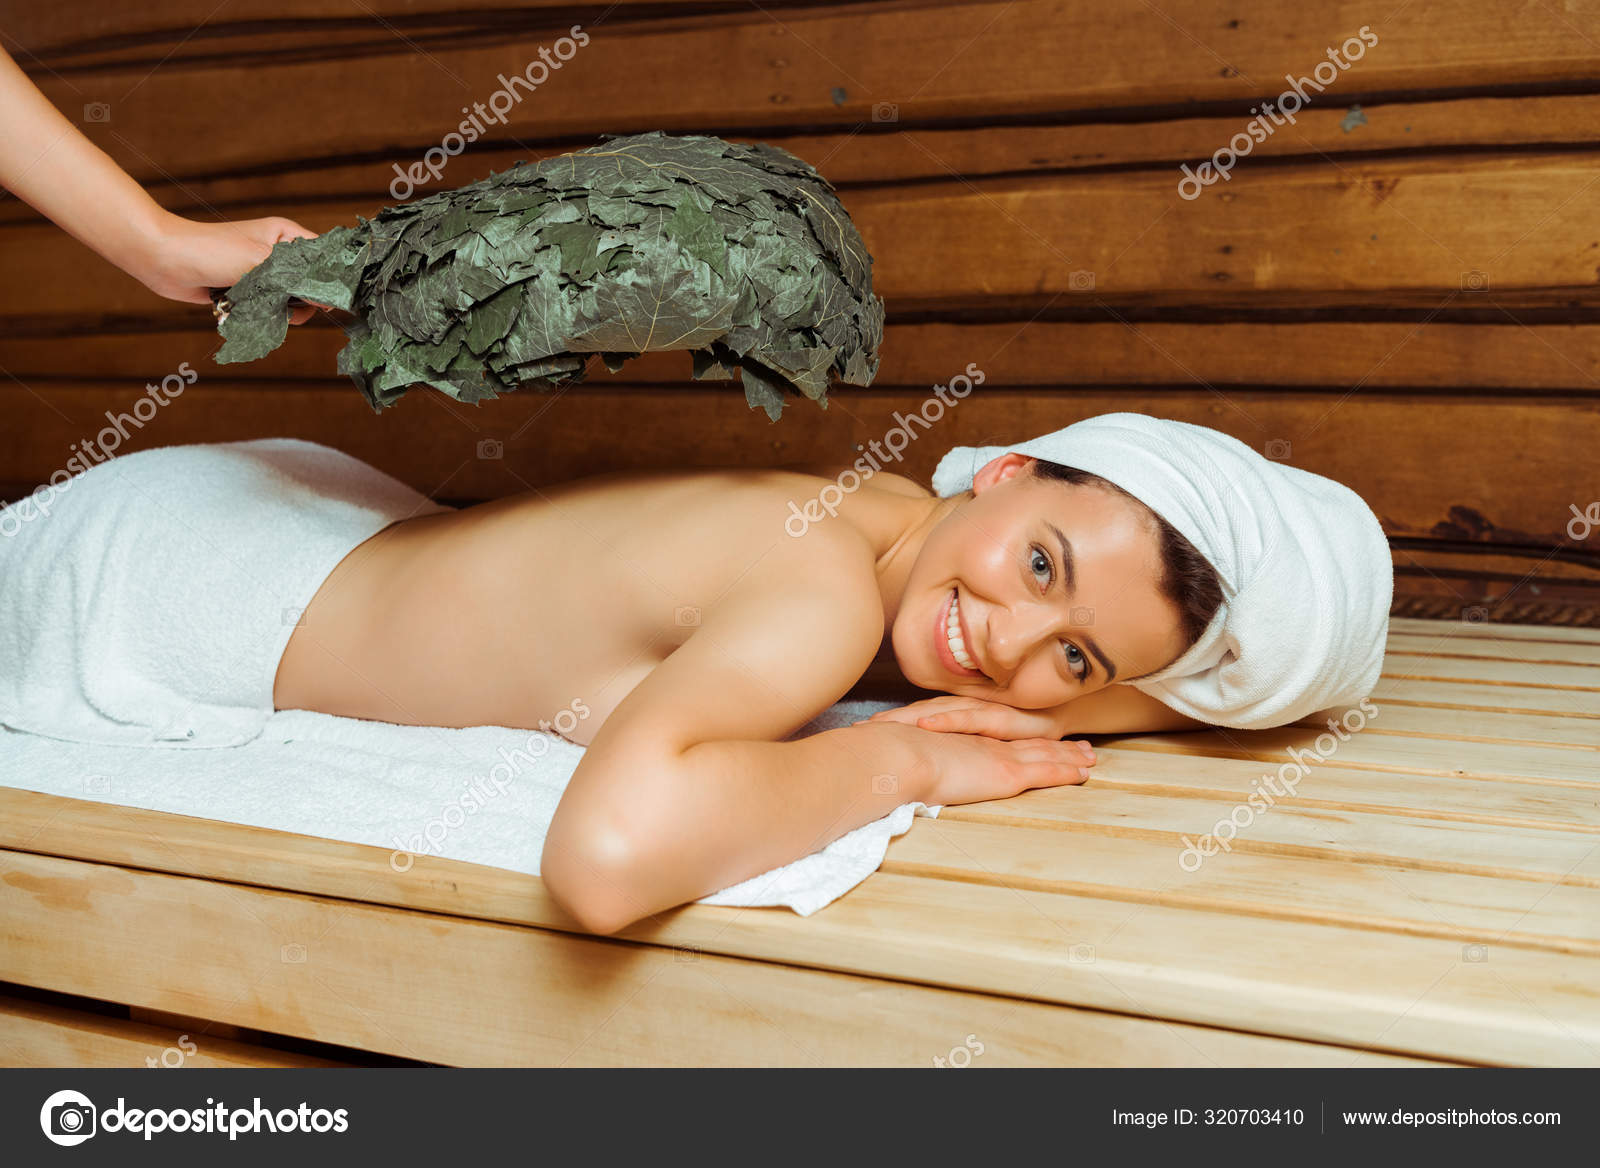 Видео после бани. Женщина в бане с веником. Баня в походе. Девушка с банным веником. Красивые женщины в бане.